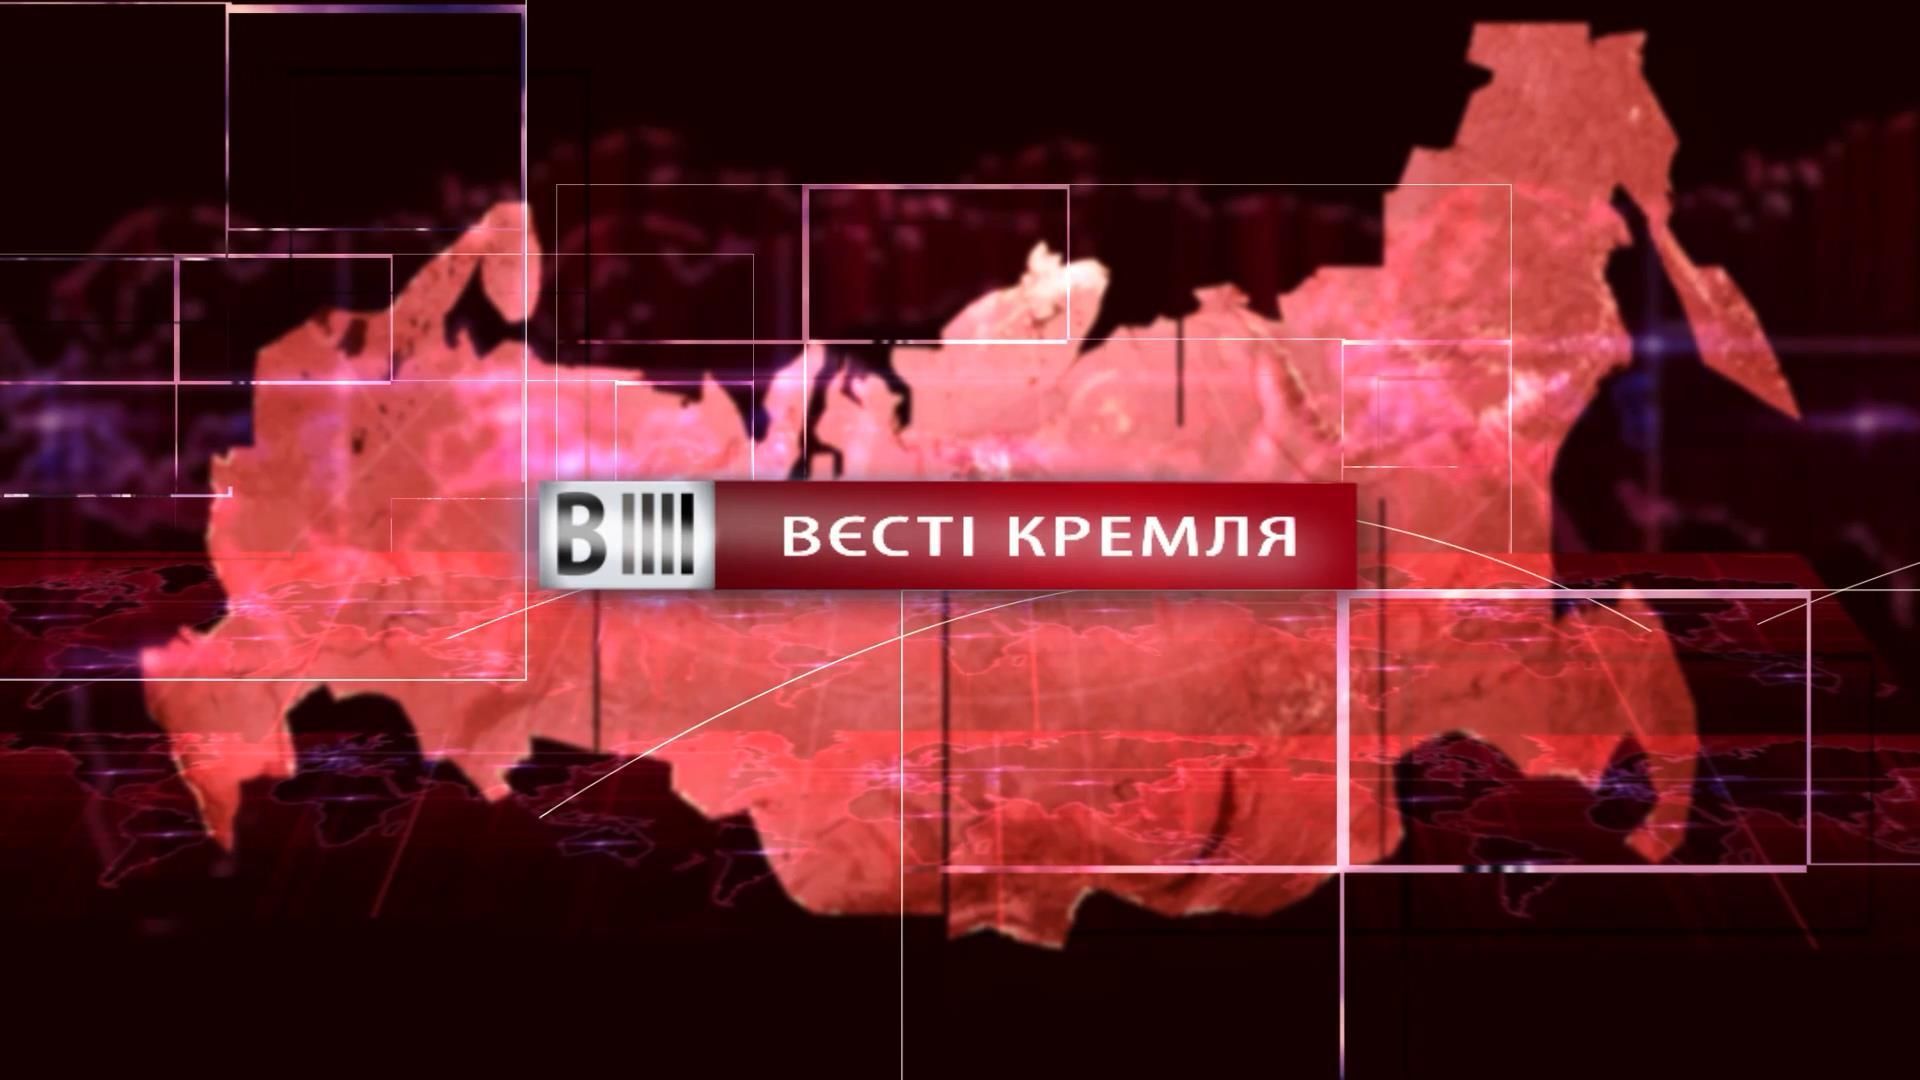 Смотрите "Вести Кремля": кровавый футбол на Лужниках. "Нанотехнологии" России